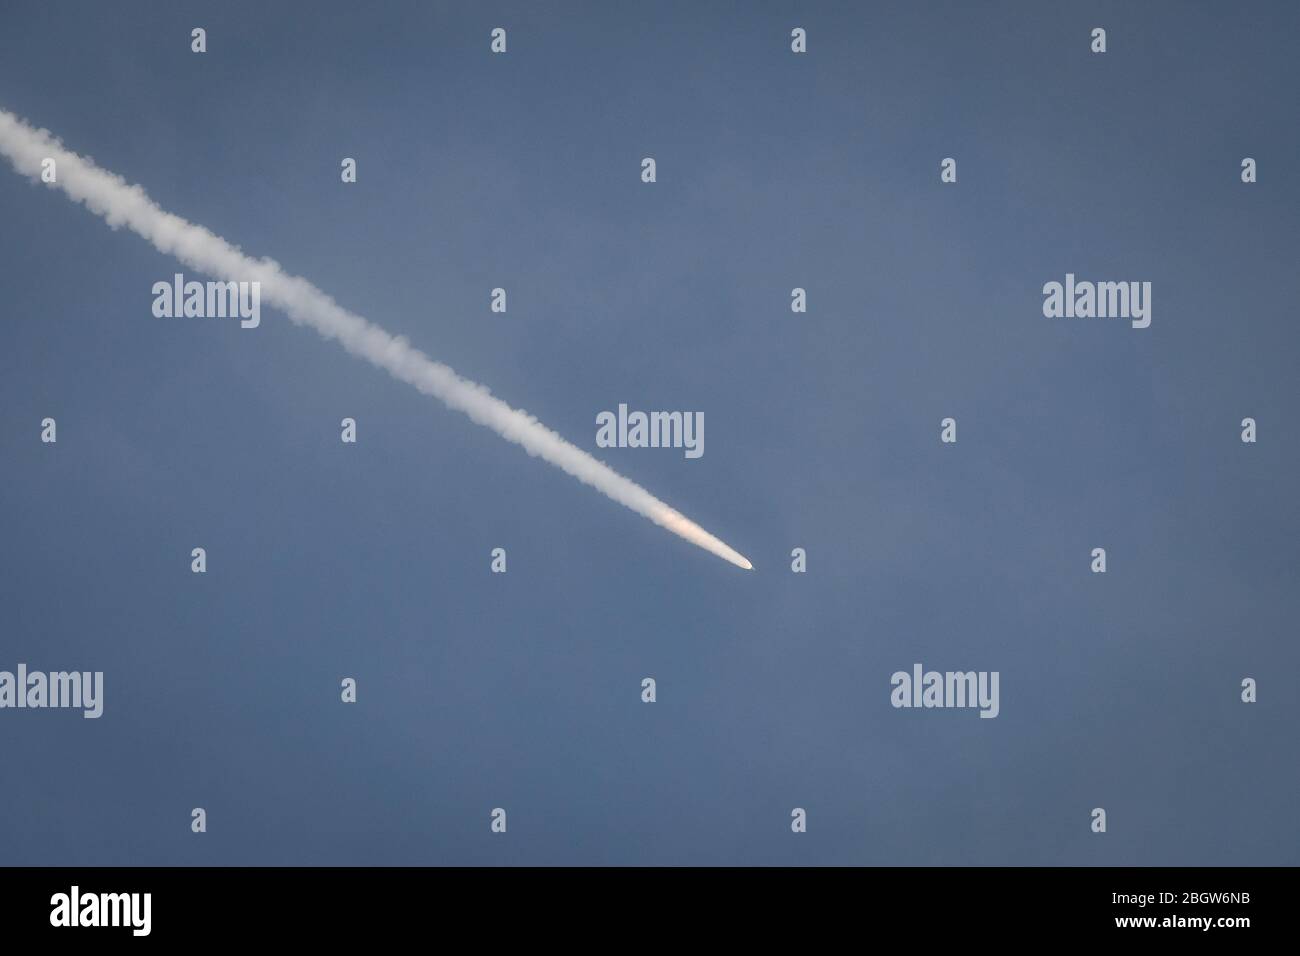 KOUROU, FRANCIA - DICEMBRE 04: Lancio del razzo Ariano durante l'operazione Titan in Guyana francese, Guyane, Kourou, Francia il 04 dicembre 2018 Foto Stock